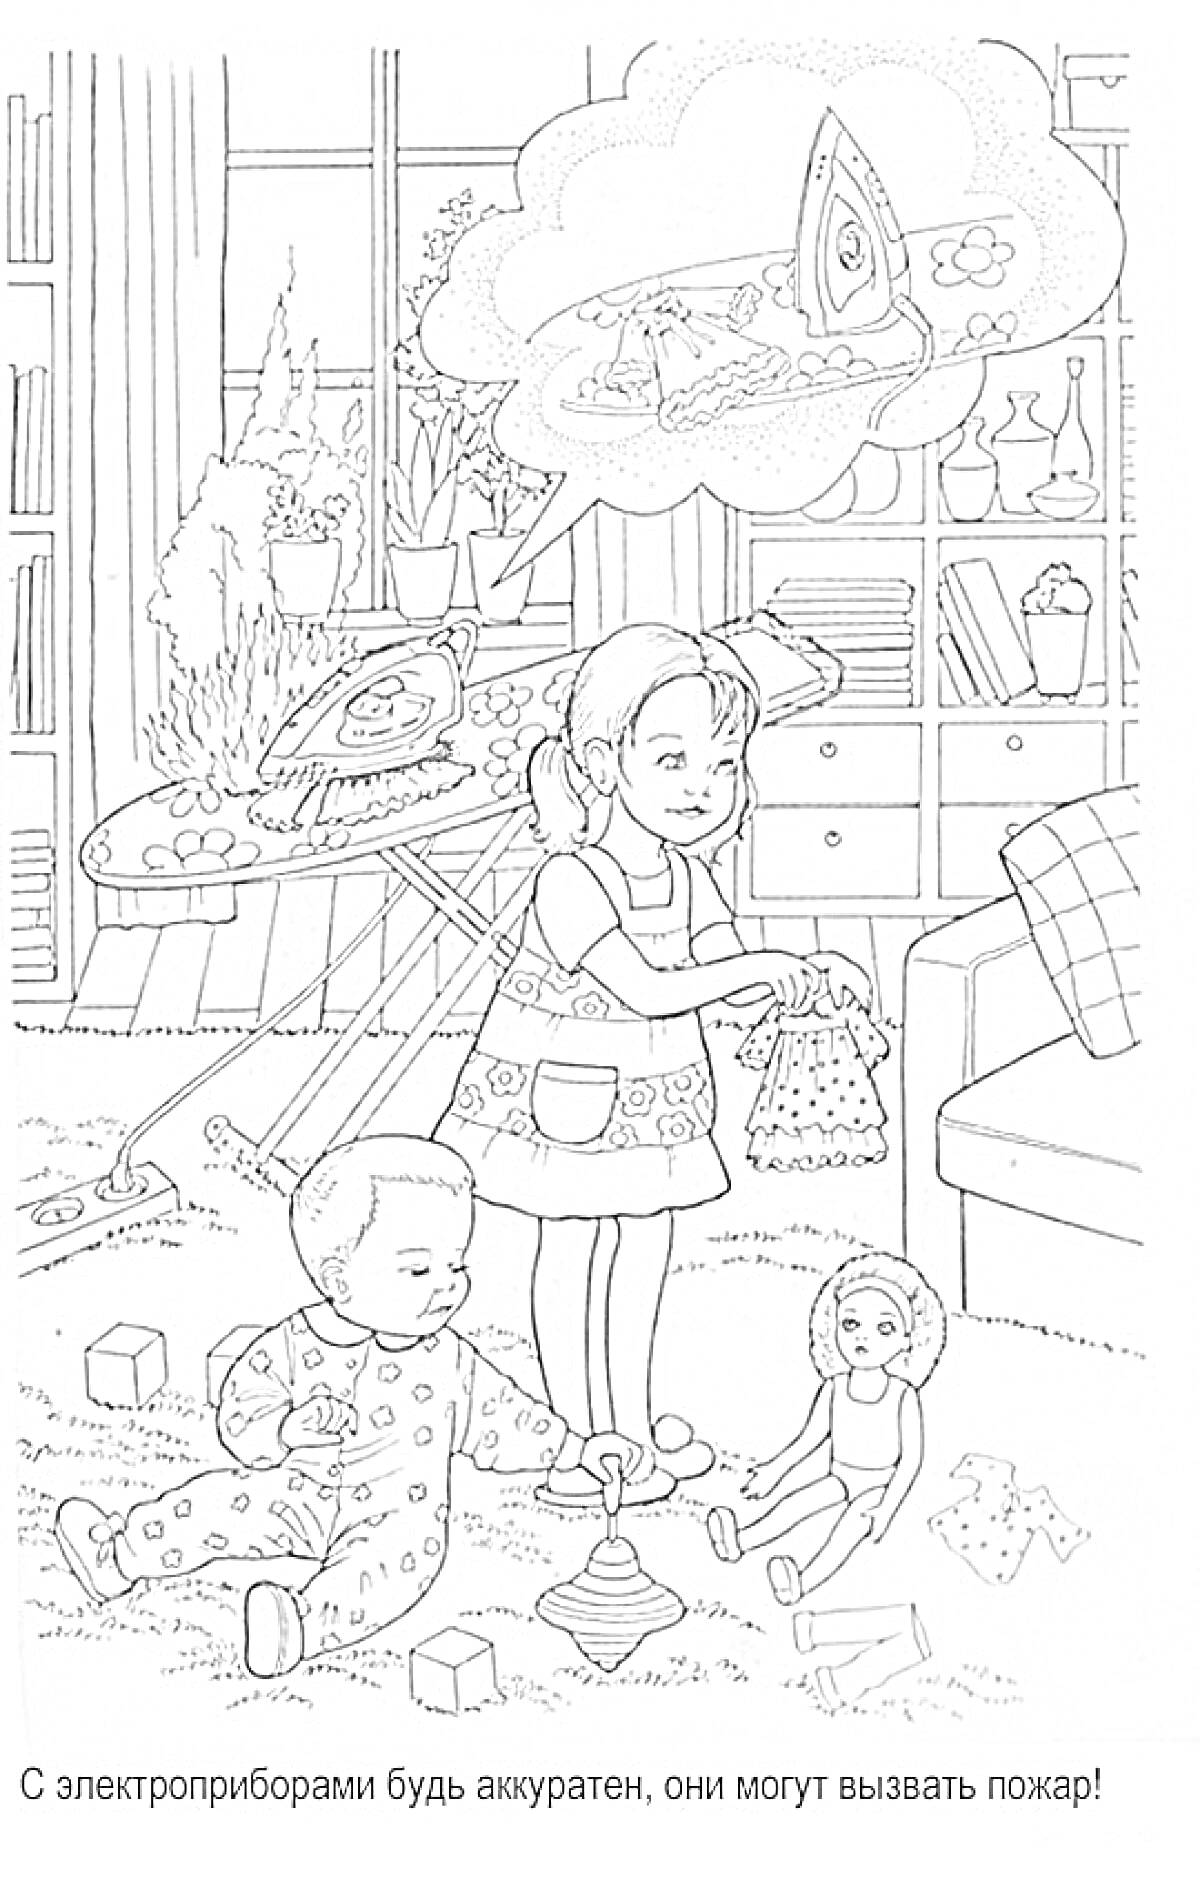 Раскраска Девочка с игрушечной уткой, мальчик с пирамидкой, кукла, утюг на гладильной доске, игрушки, комод, шкаф с книгами и цветами, окно с занавесками.